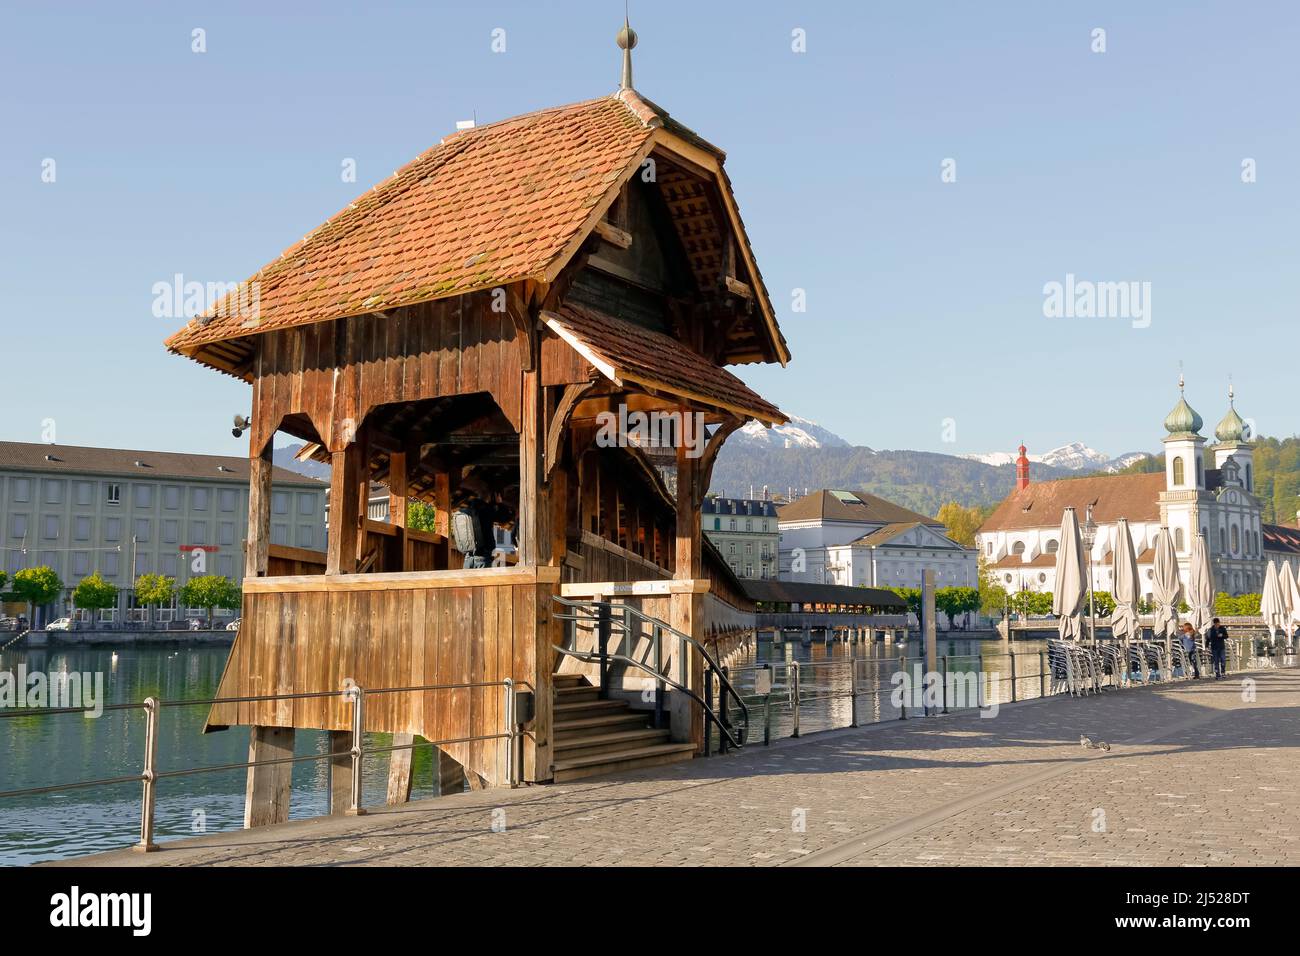 Lucerna, Suiza - 05 de mayo de 2016: Entrada a madera techada El Puente de la Capilla que conecta las dos orillas del río Reuss y es uno de los Luce Foto de stock